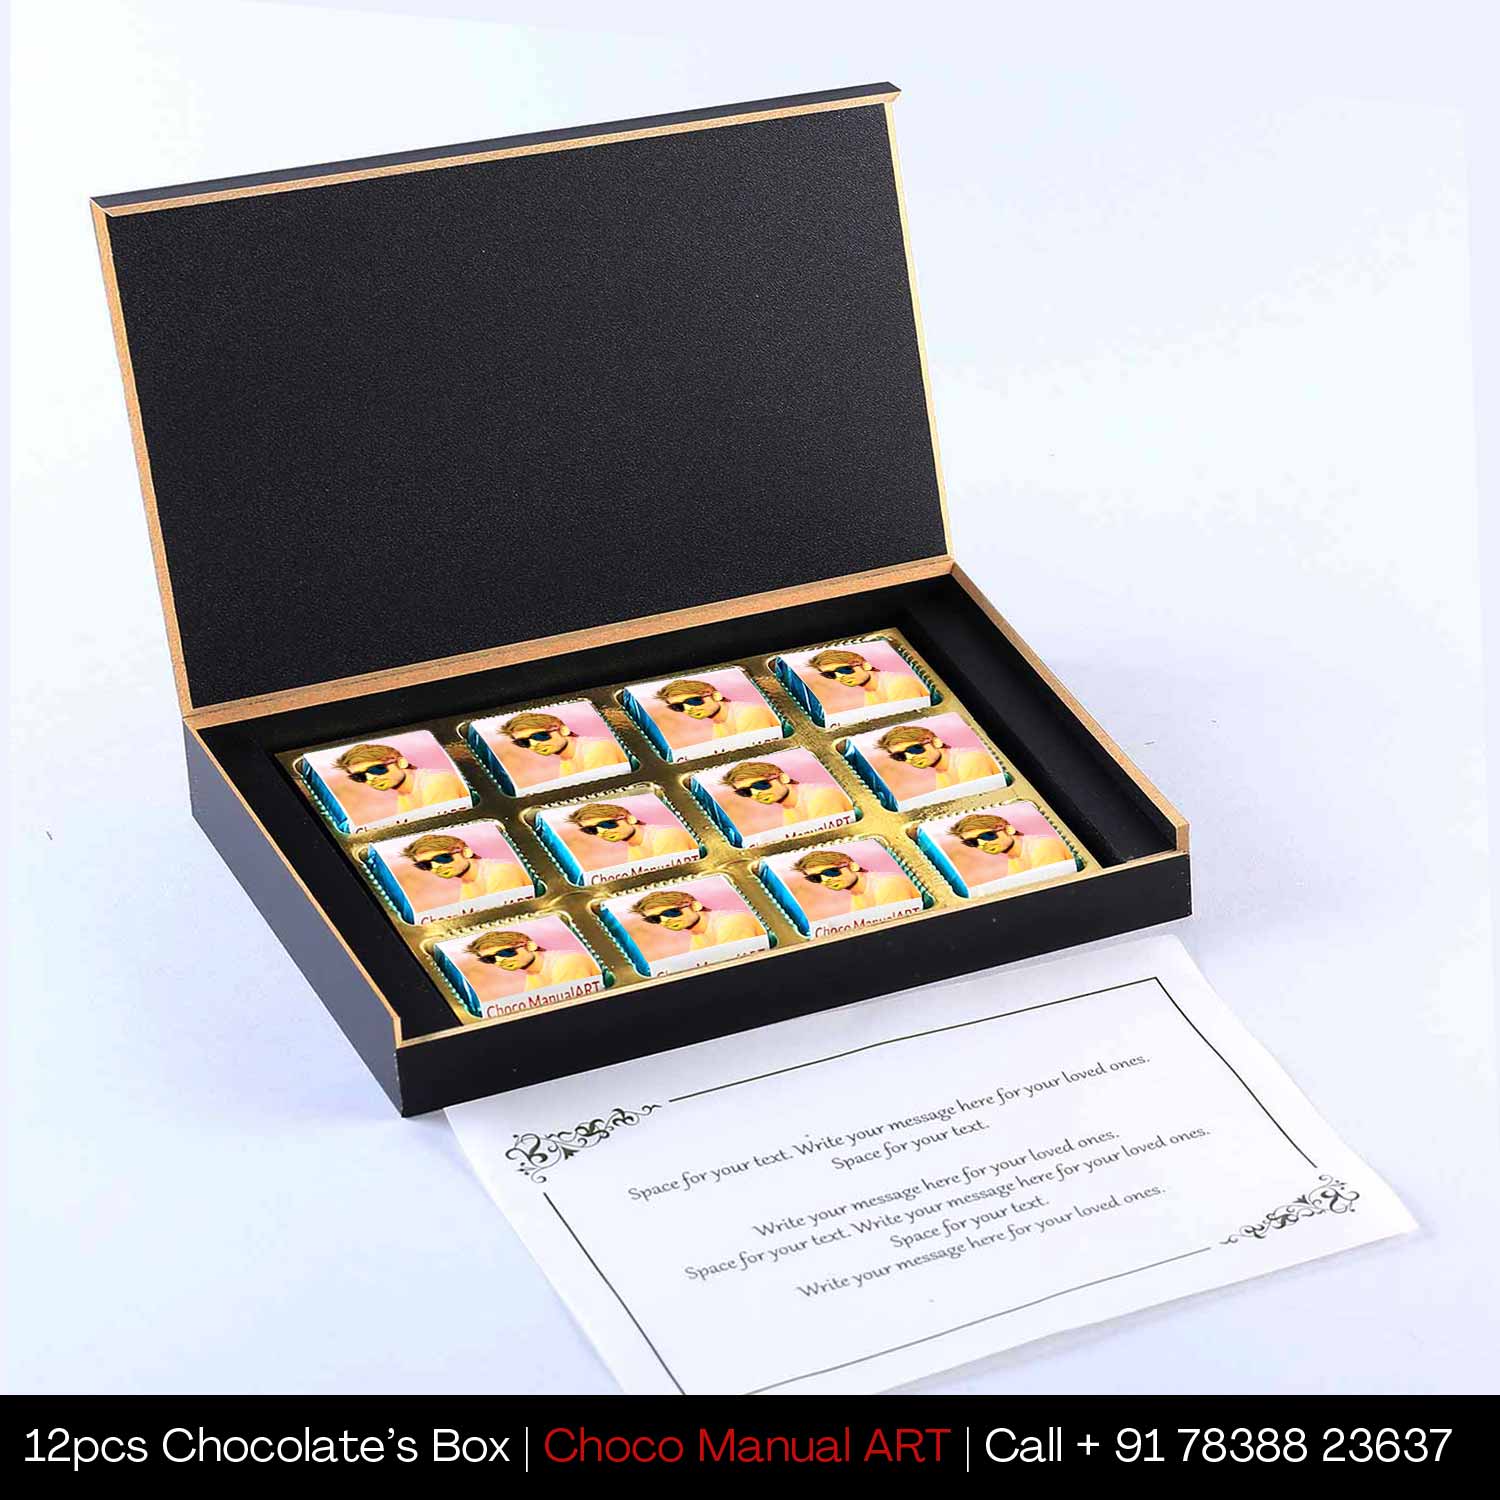 Colourful holi personalised gift of chocolates